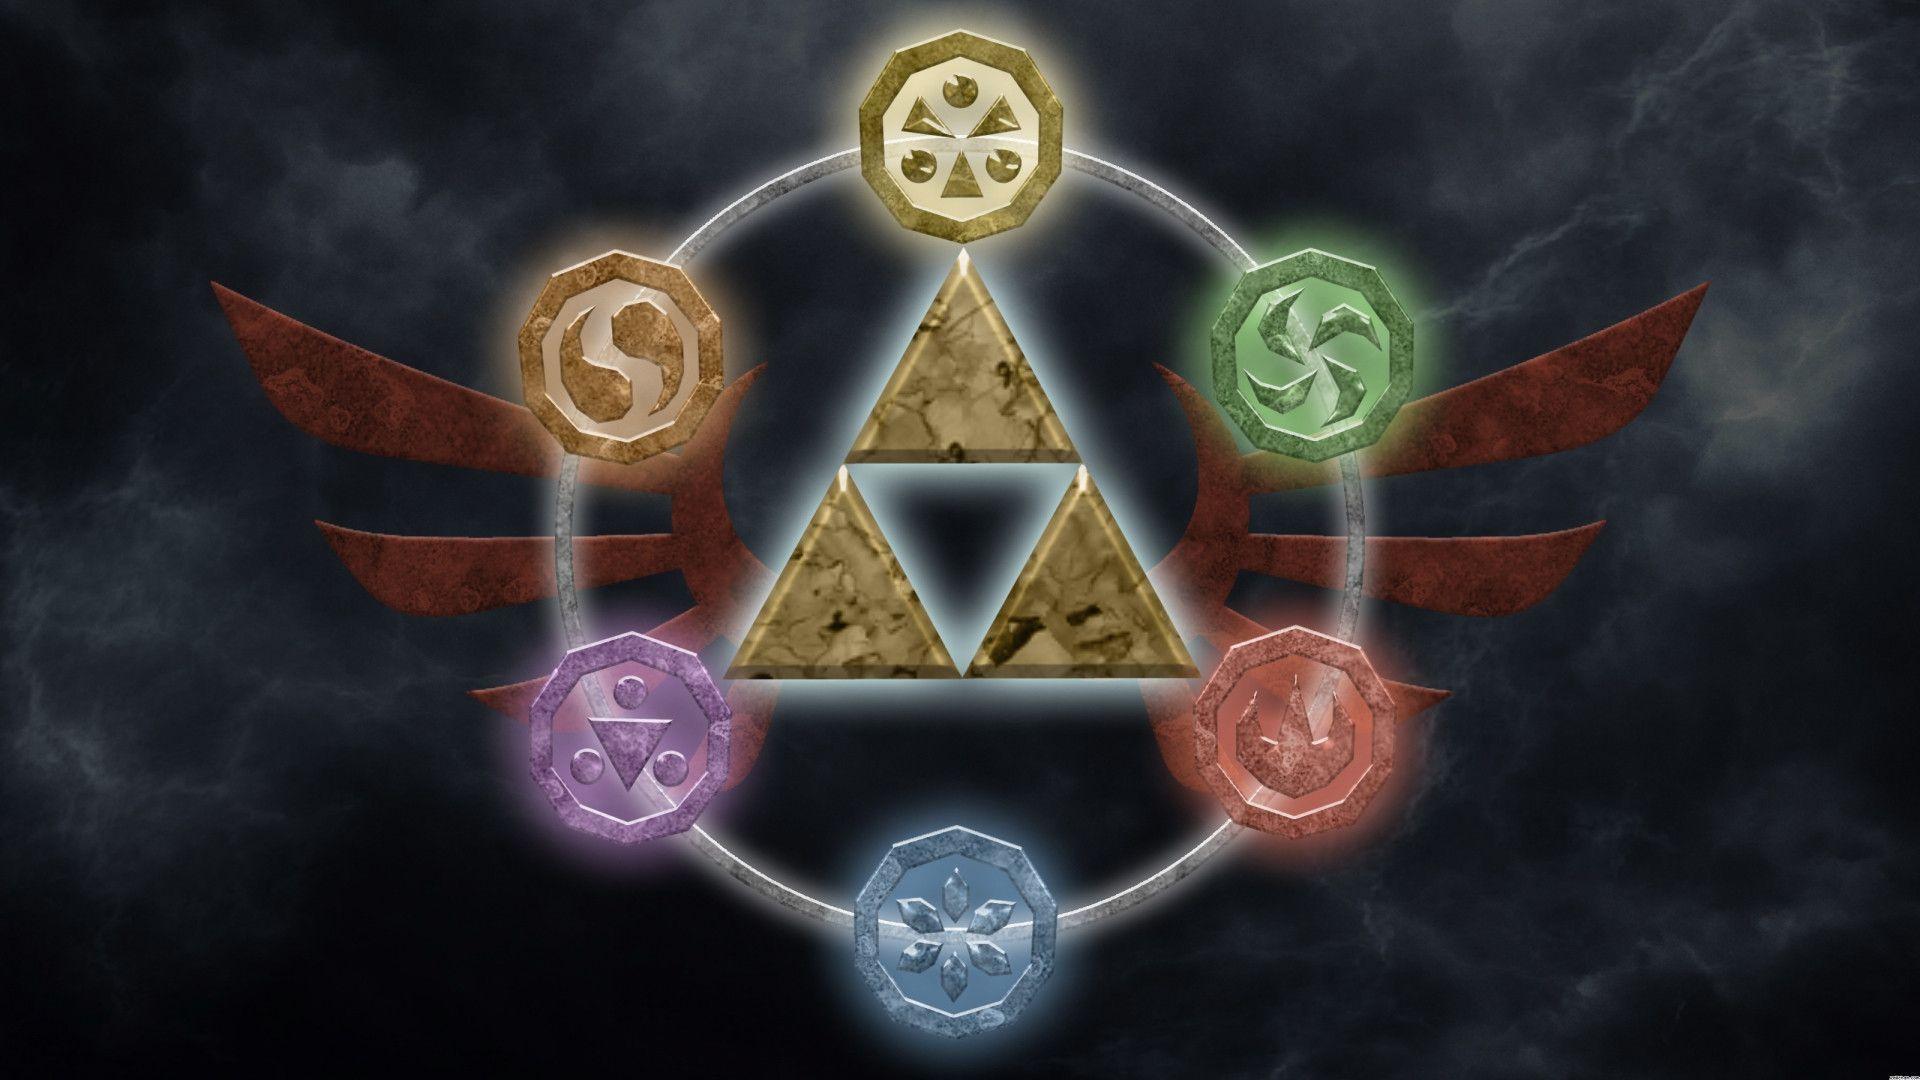 The Legend Of Zelda Computer Wallpaper, Desktop Background